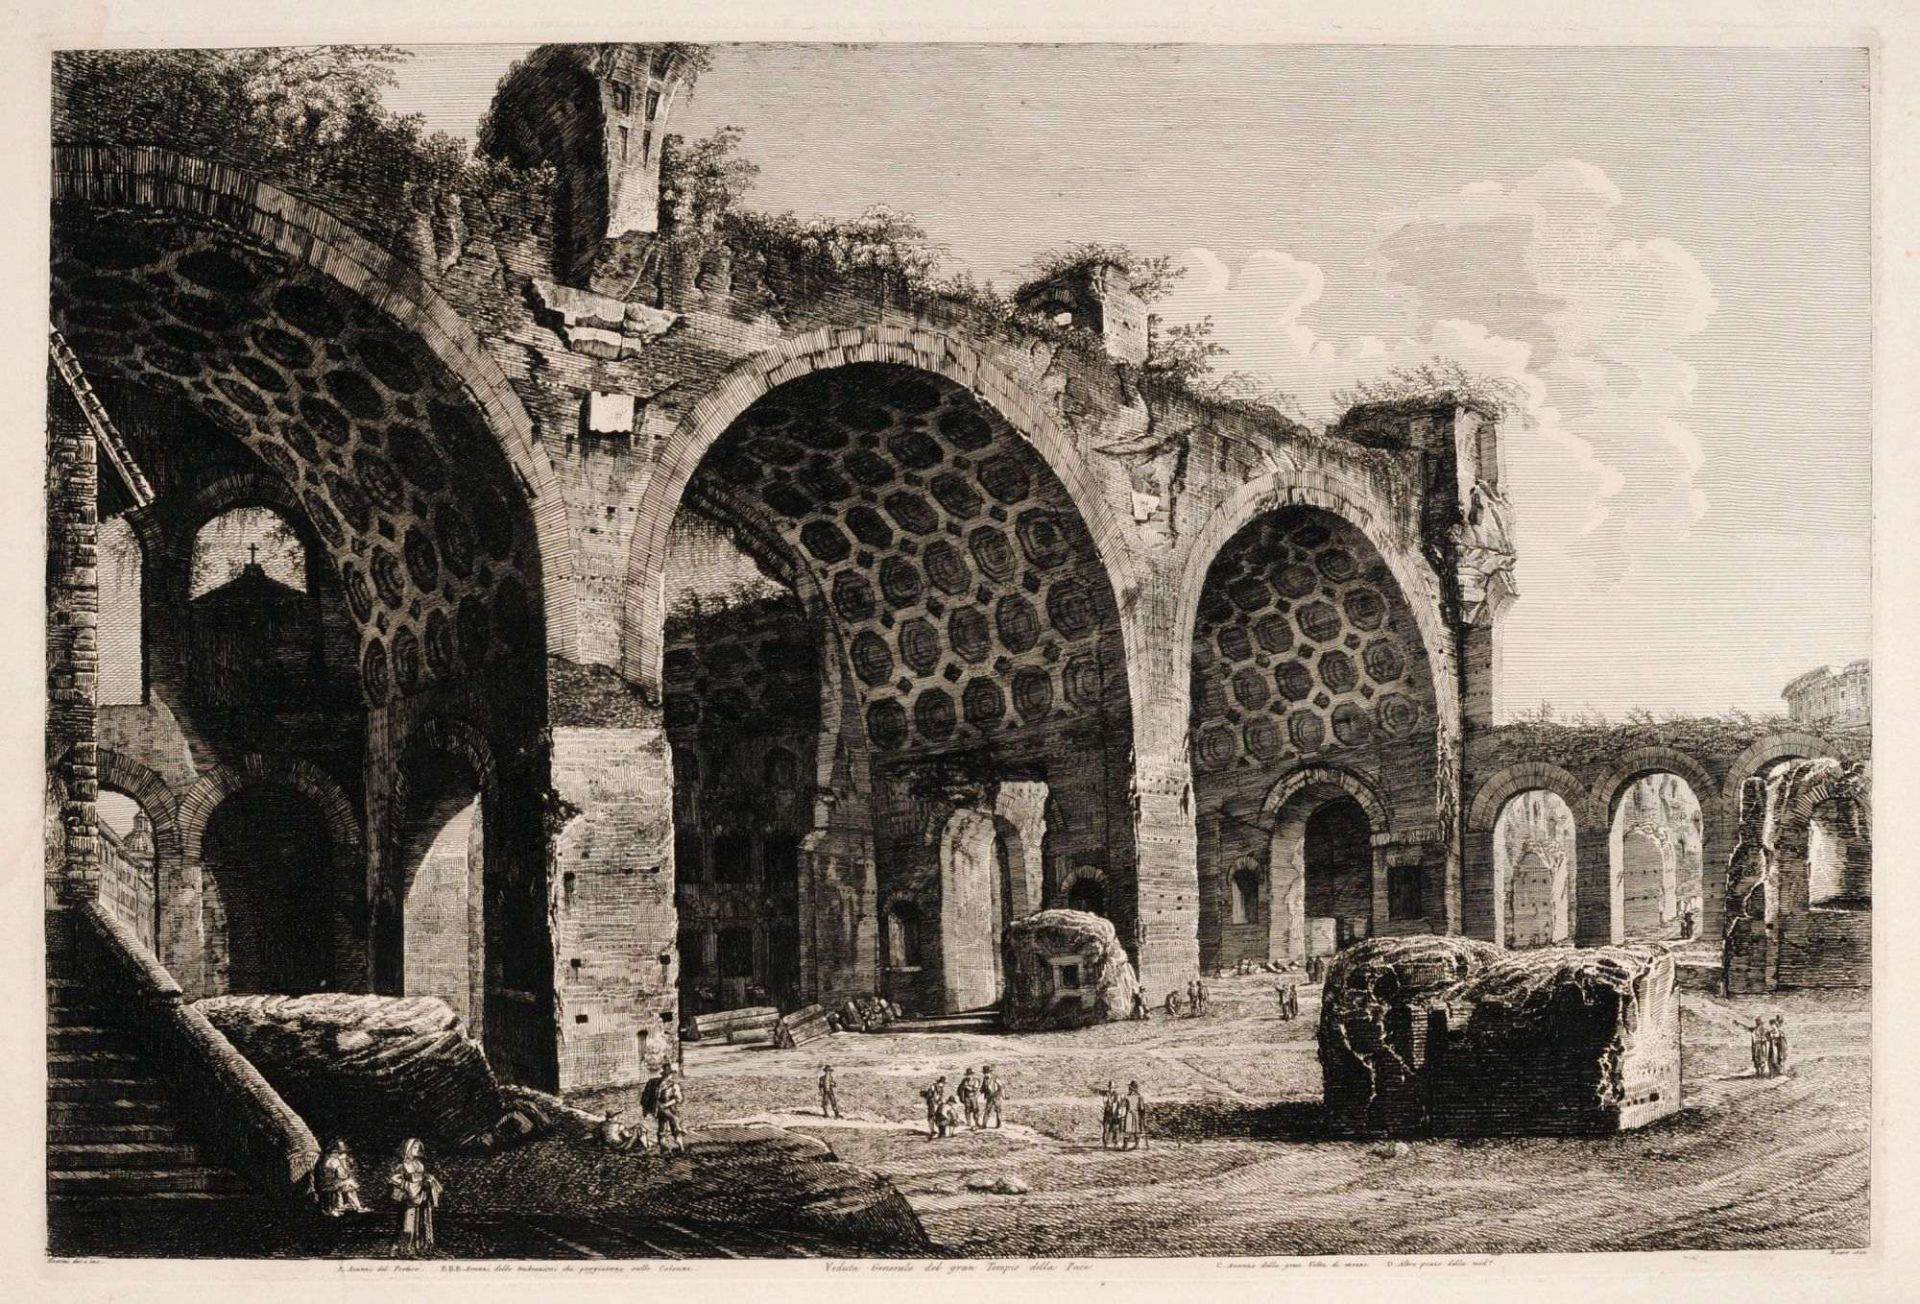 Luigi Rossini "Veduta generale de gran Tempio della Pace" 1822.